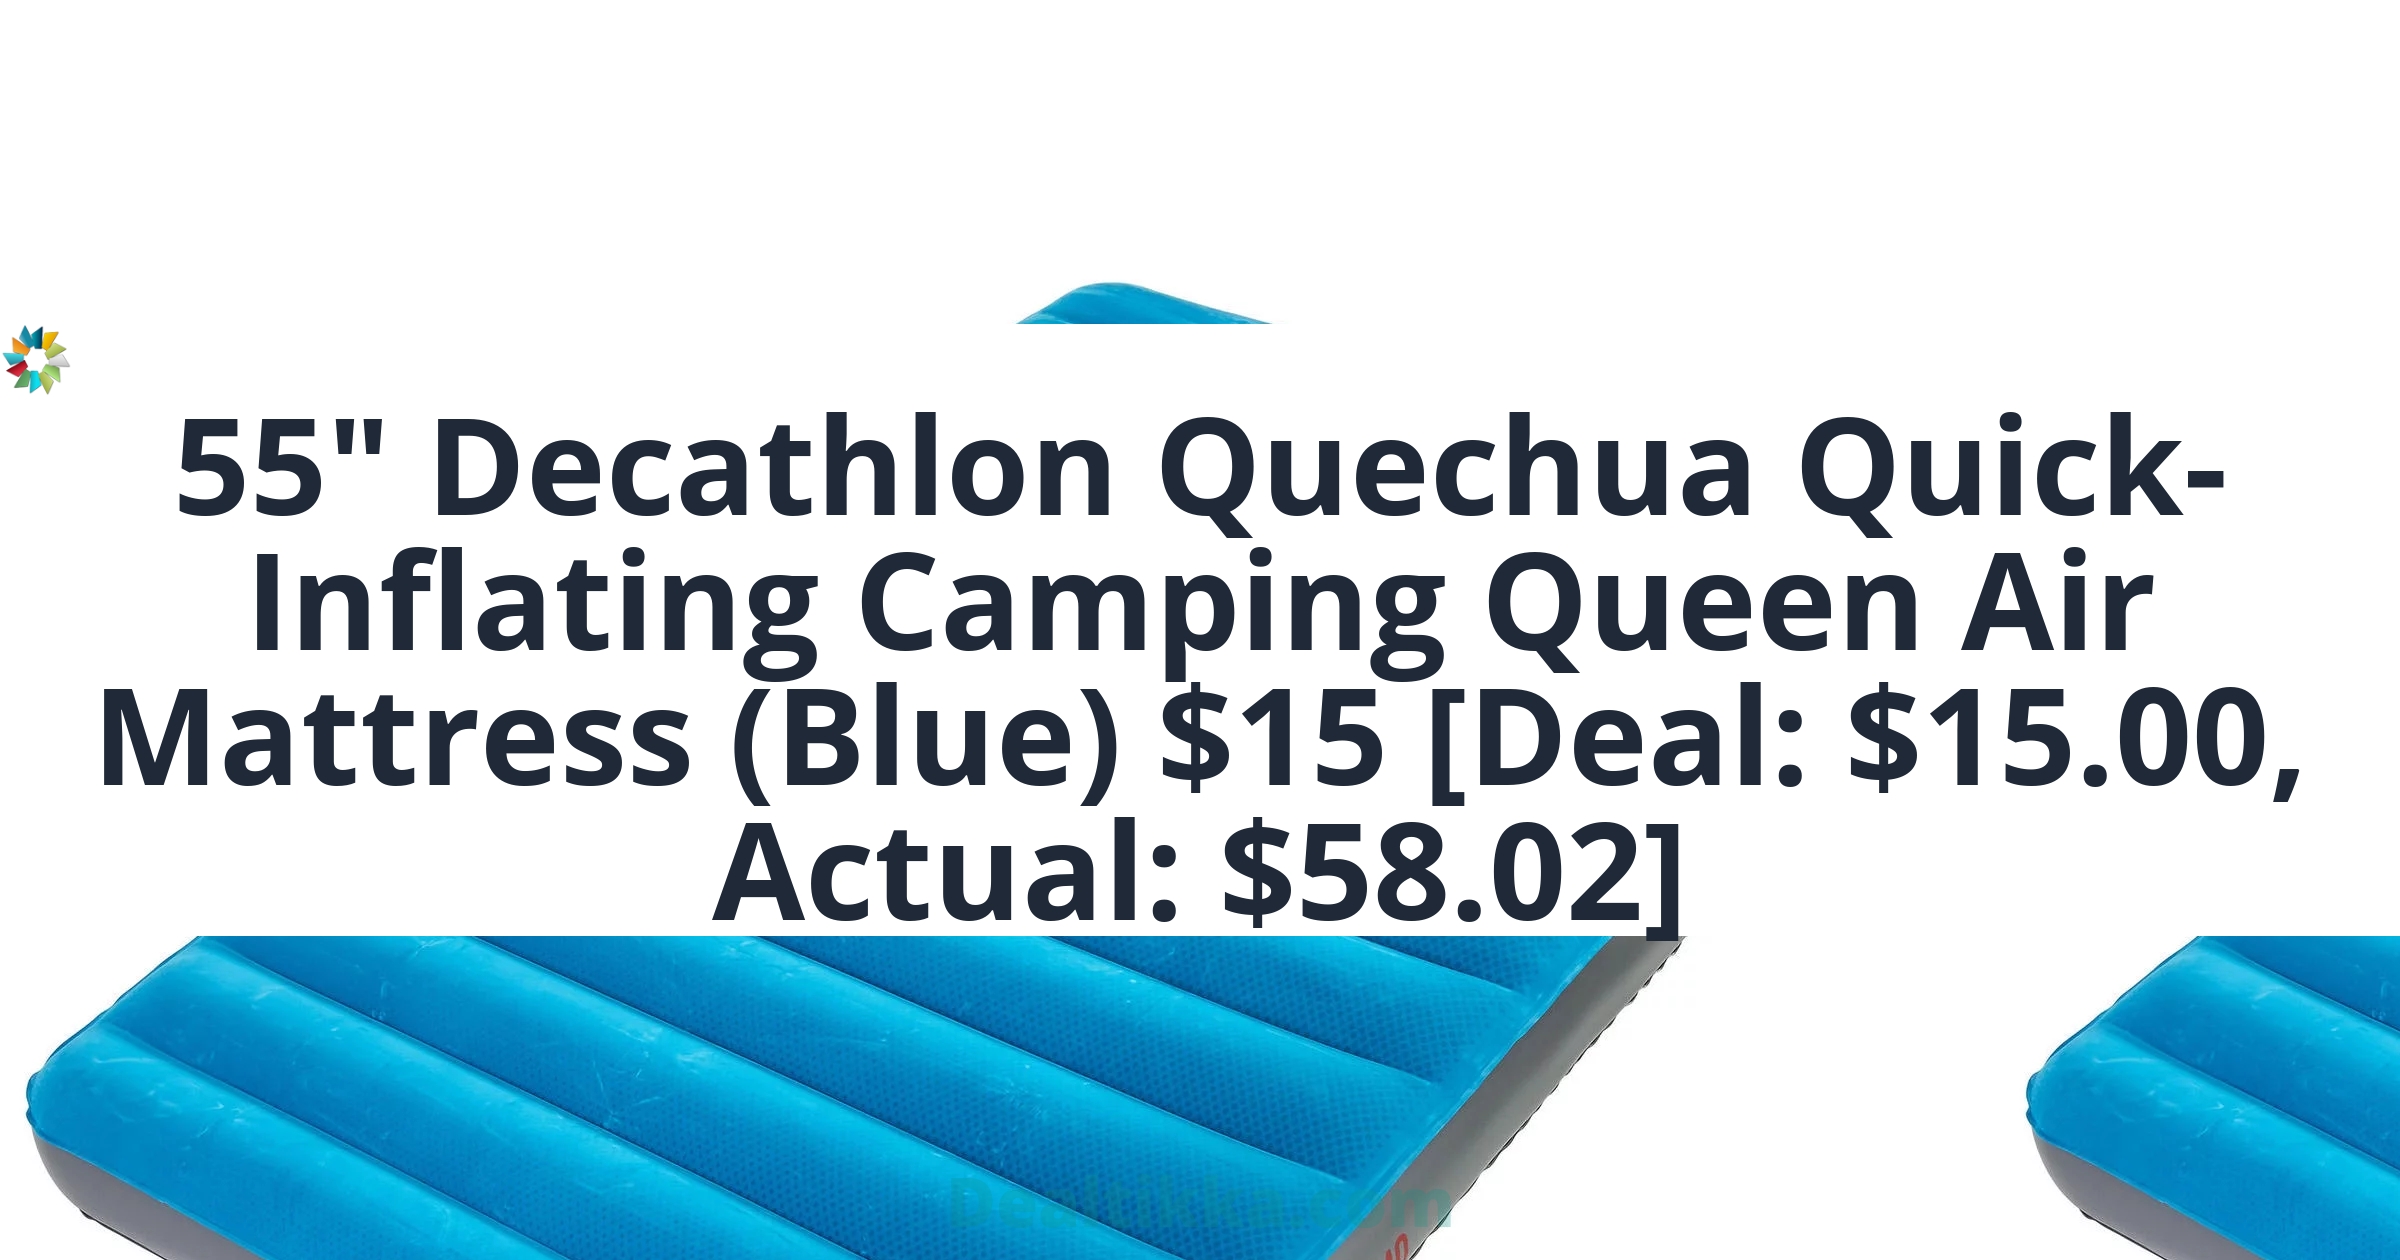 Decathlon-Quechua-Air-seconds-7in-Inflatable-Camping-Mattress-Quick-Inflating-2-Person-Queen-Blue_691ad6a1-955d-4045-92a1-8a7fec4dab18.2730d0291633868fd058bc941dcdd4de.jpeg&bgTailwind=bg-blueGray-200&footer=Dealtikka.com&footerTailwind=text-teal-600%20font-black%20opacity-25%20text-3xl&containerTailwind=bg-white&t=1717382698576&refresh=1